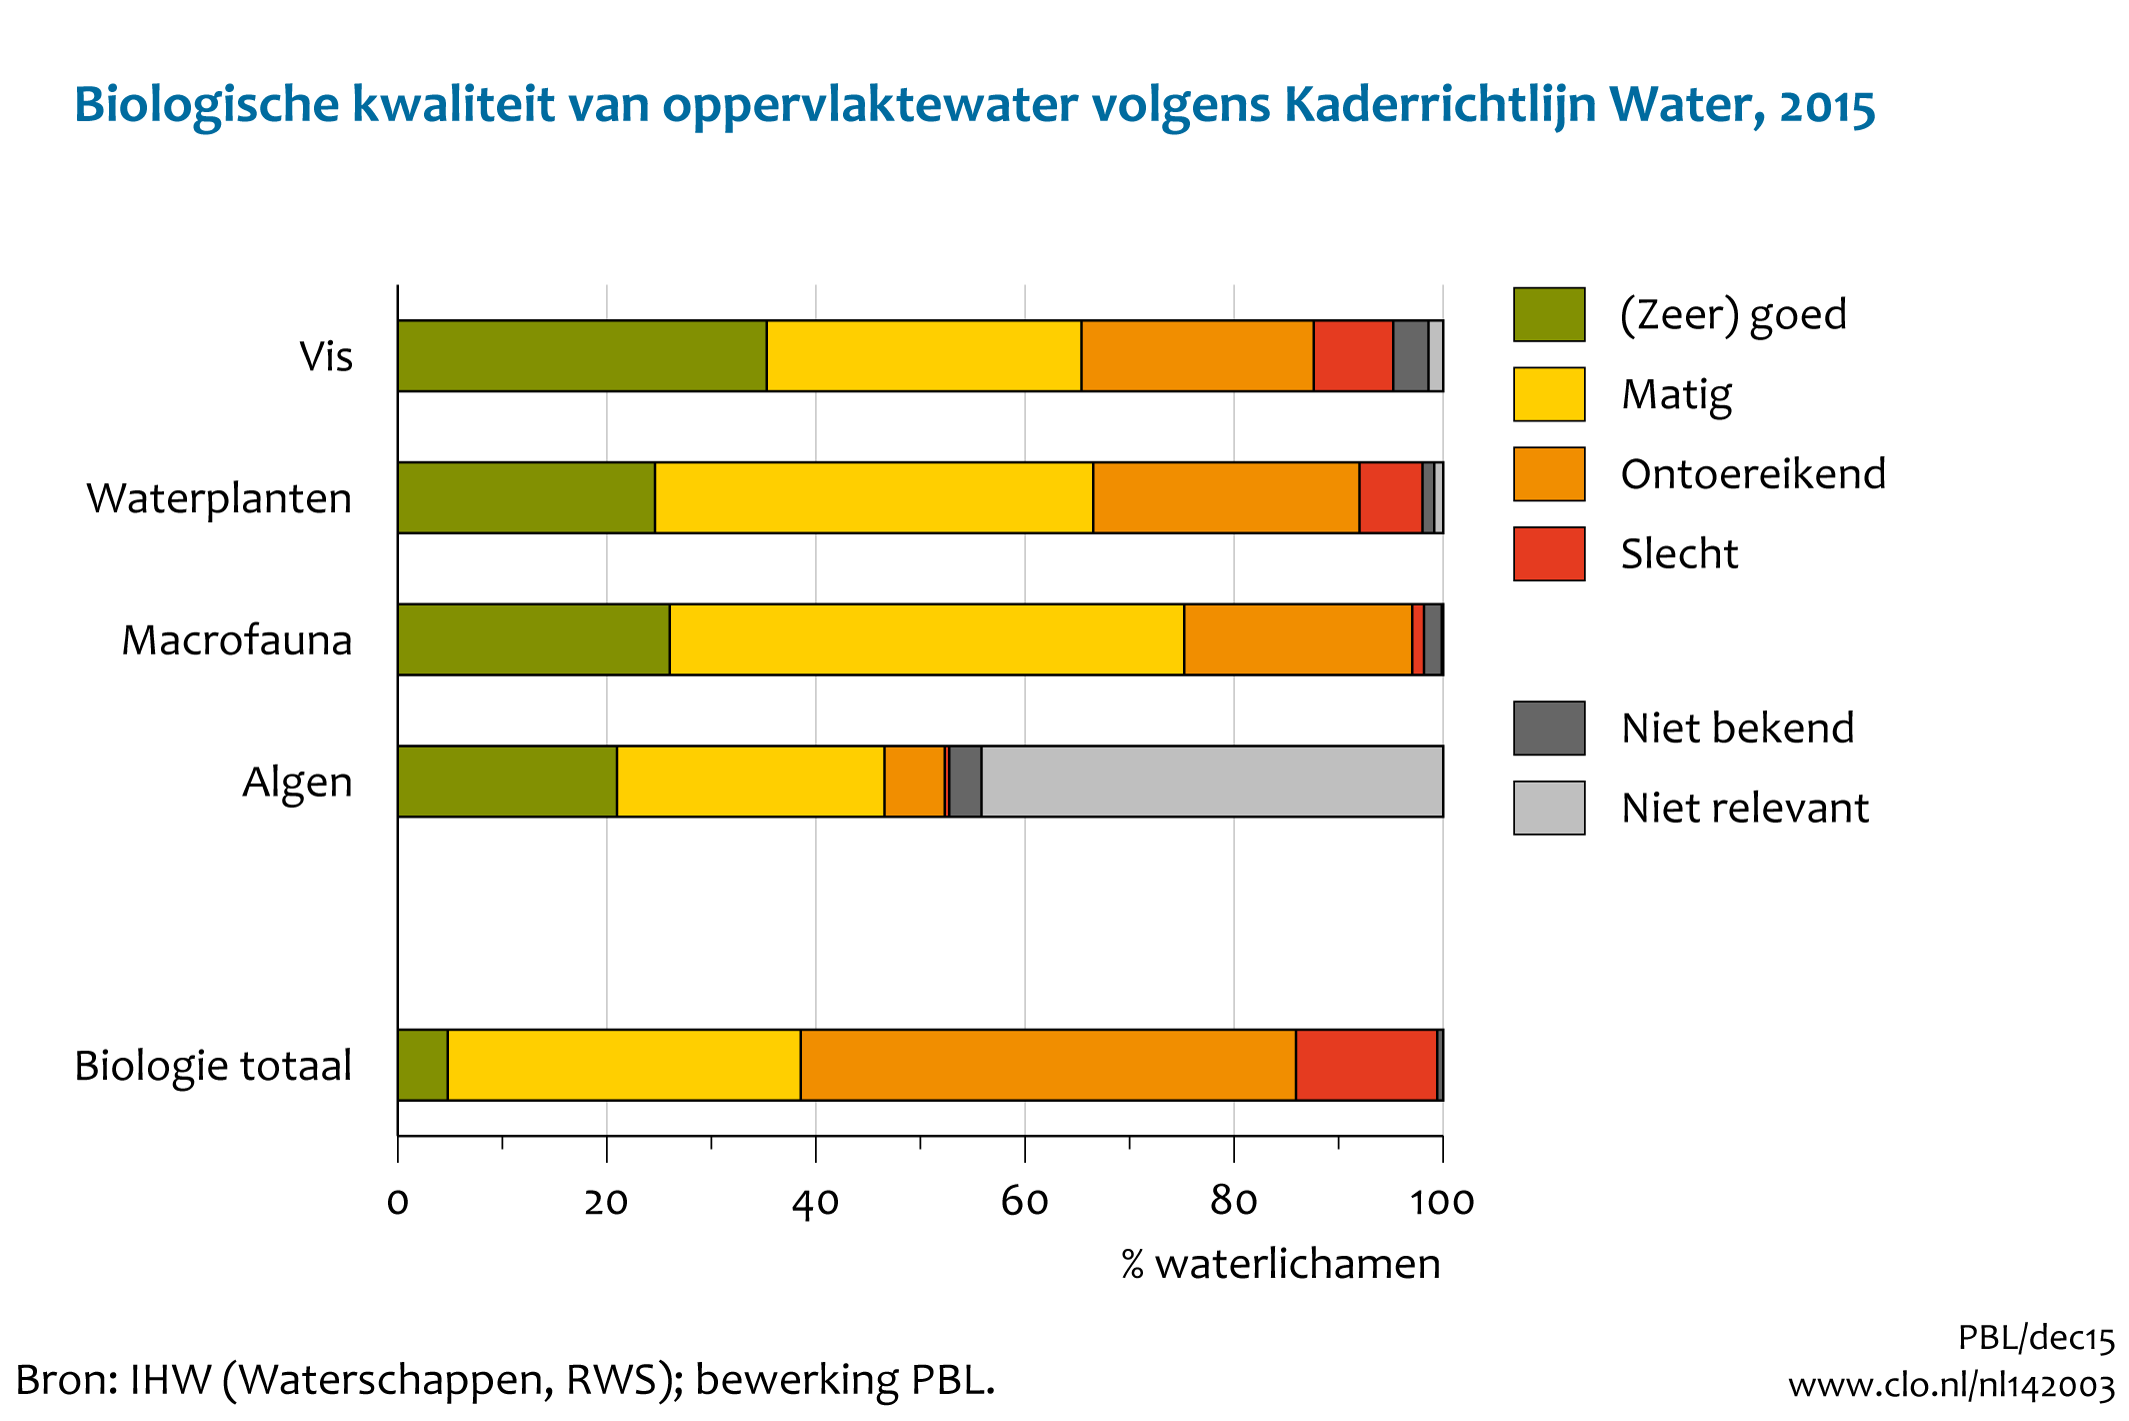 Figuur Beoordeling biologische kwaliteit oppervlaktewater in KRW . In de rest van de tekst wordt deze figuur uitgebreider uitgelegd.